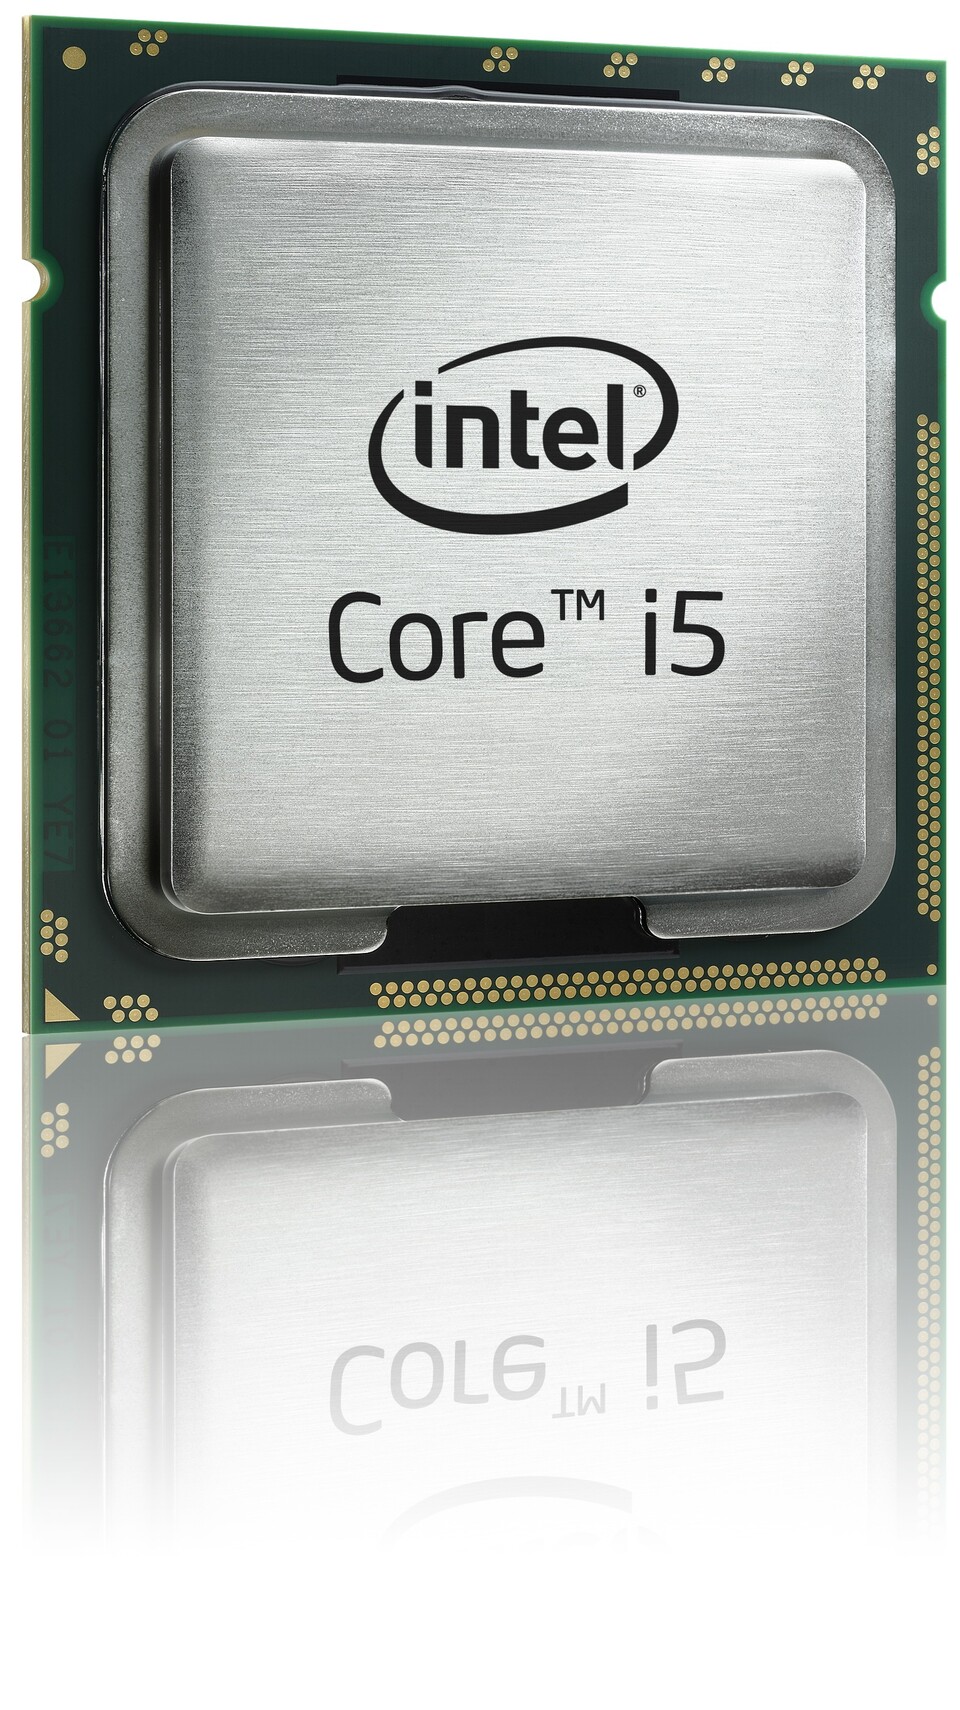 Der Core i5 750 ist aufgrund der hohen Spieleleistung sowie des fairen Preises von 180 für Aufrüstwillige besonders interessant.